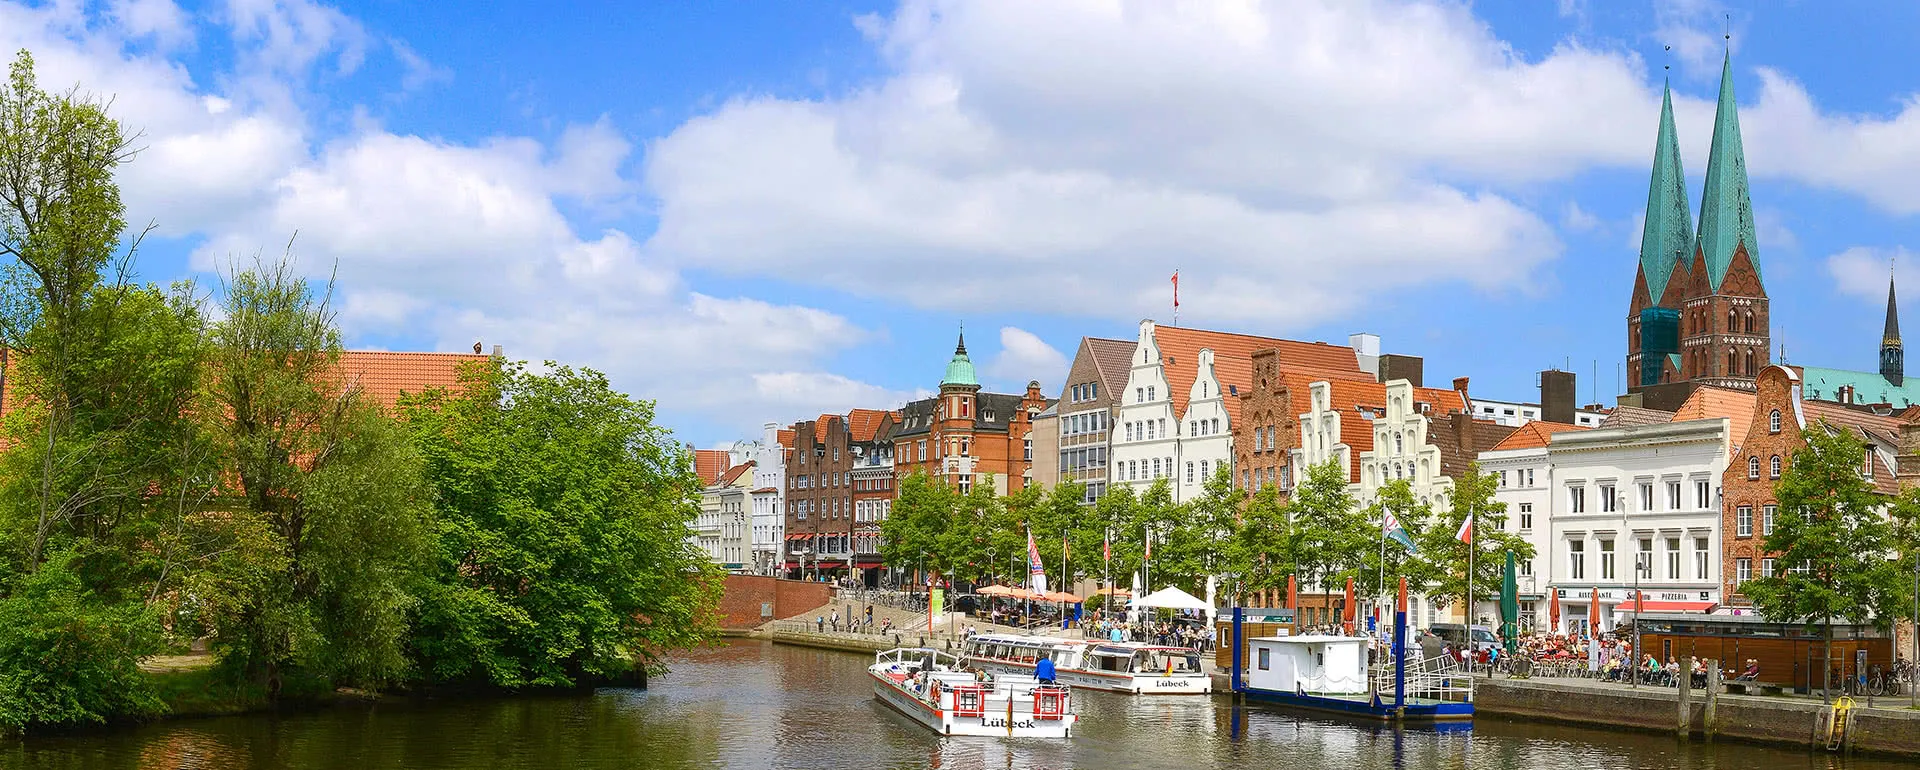 Lübeck panorama image